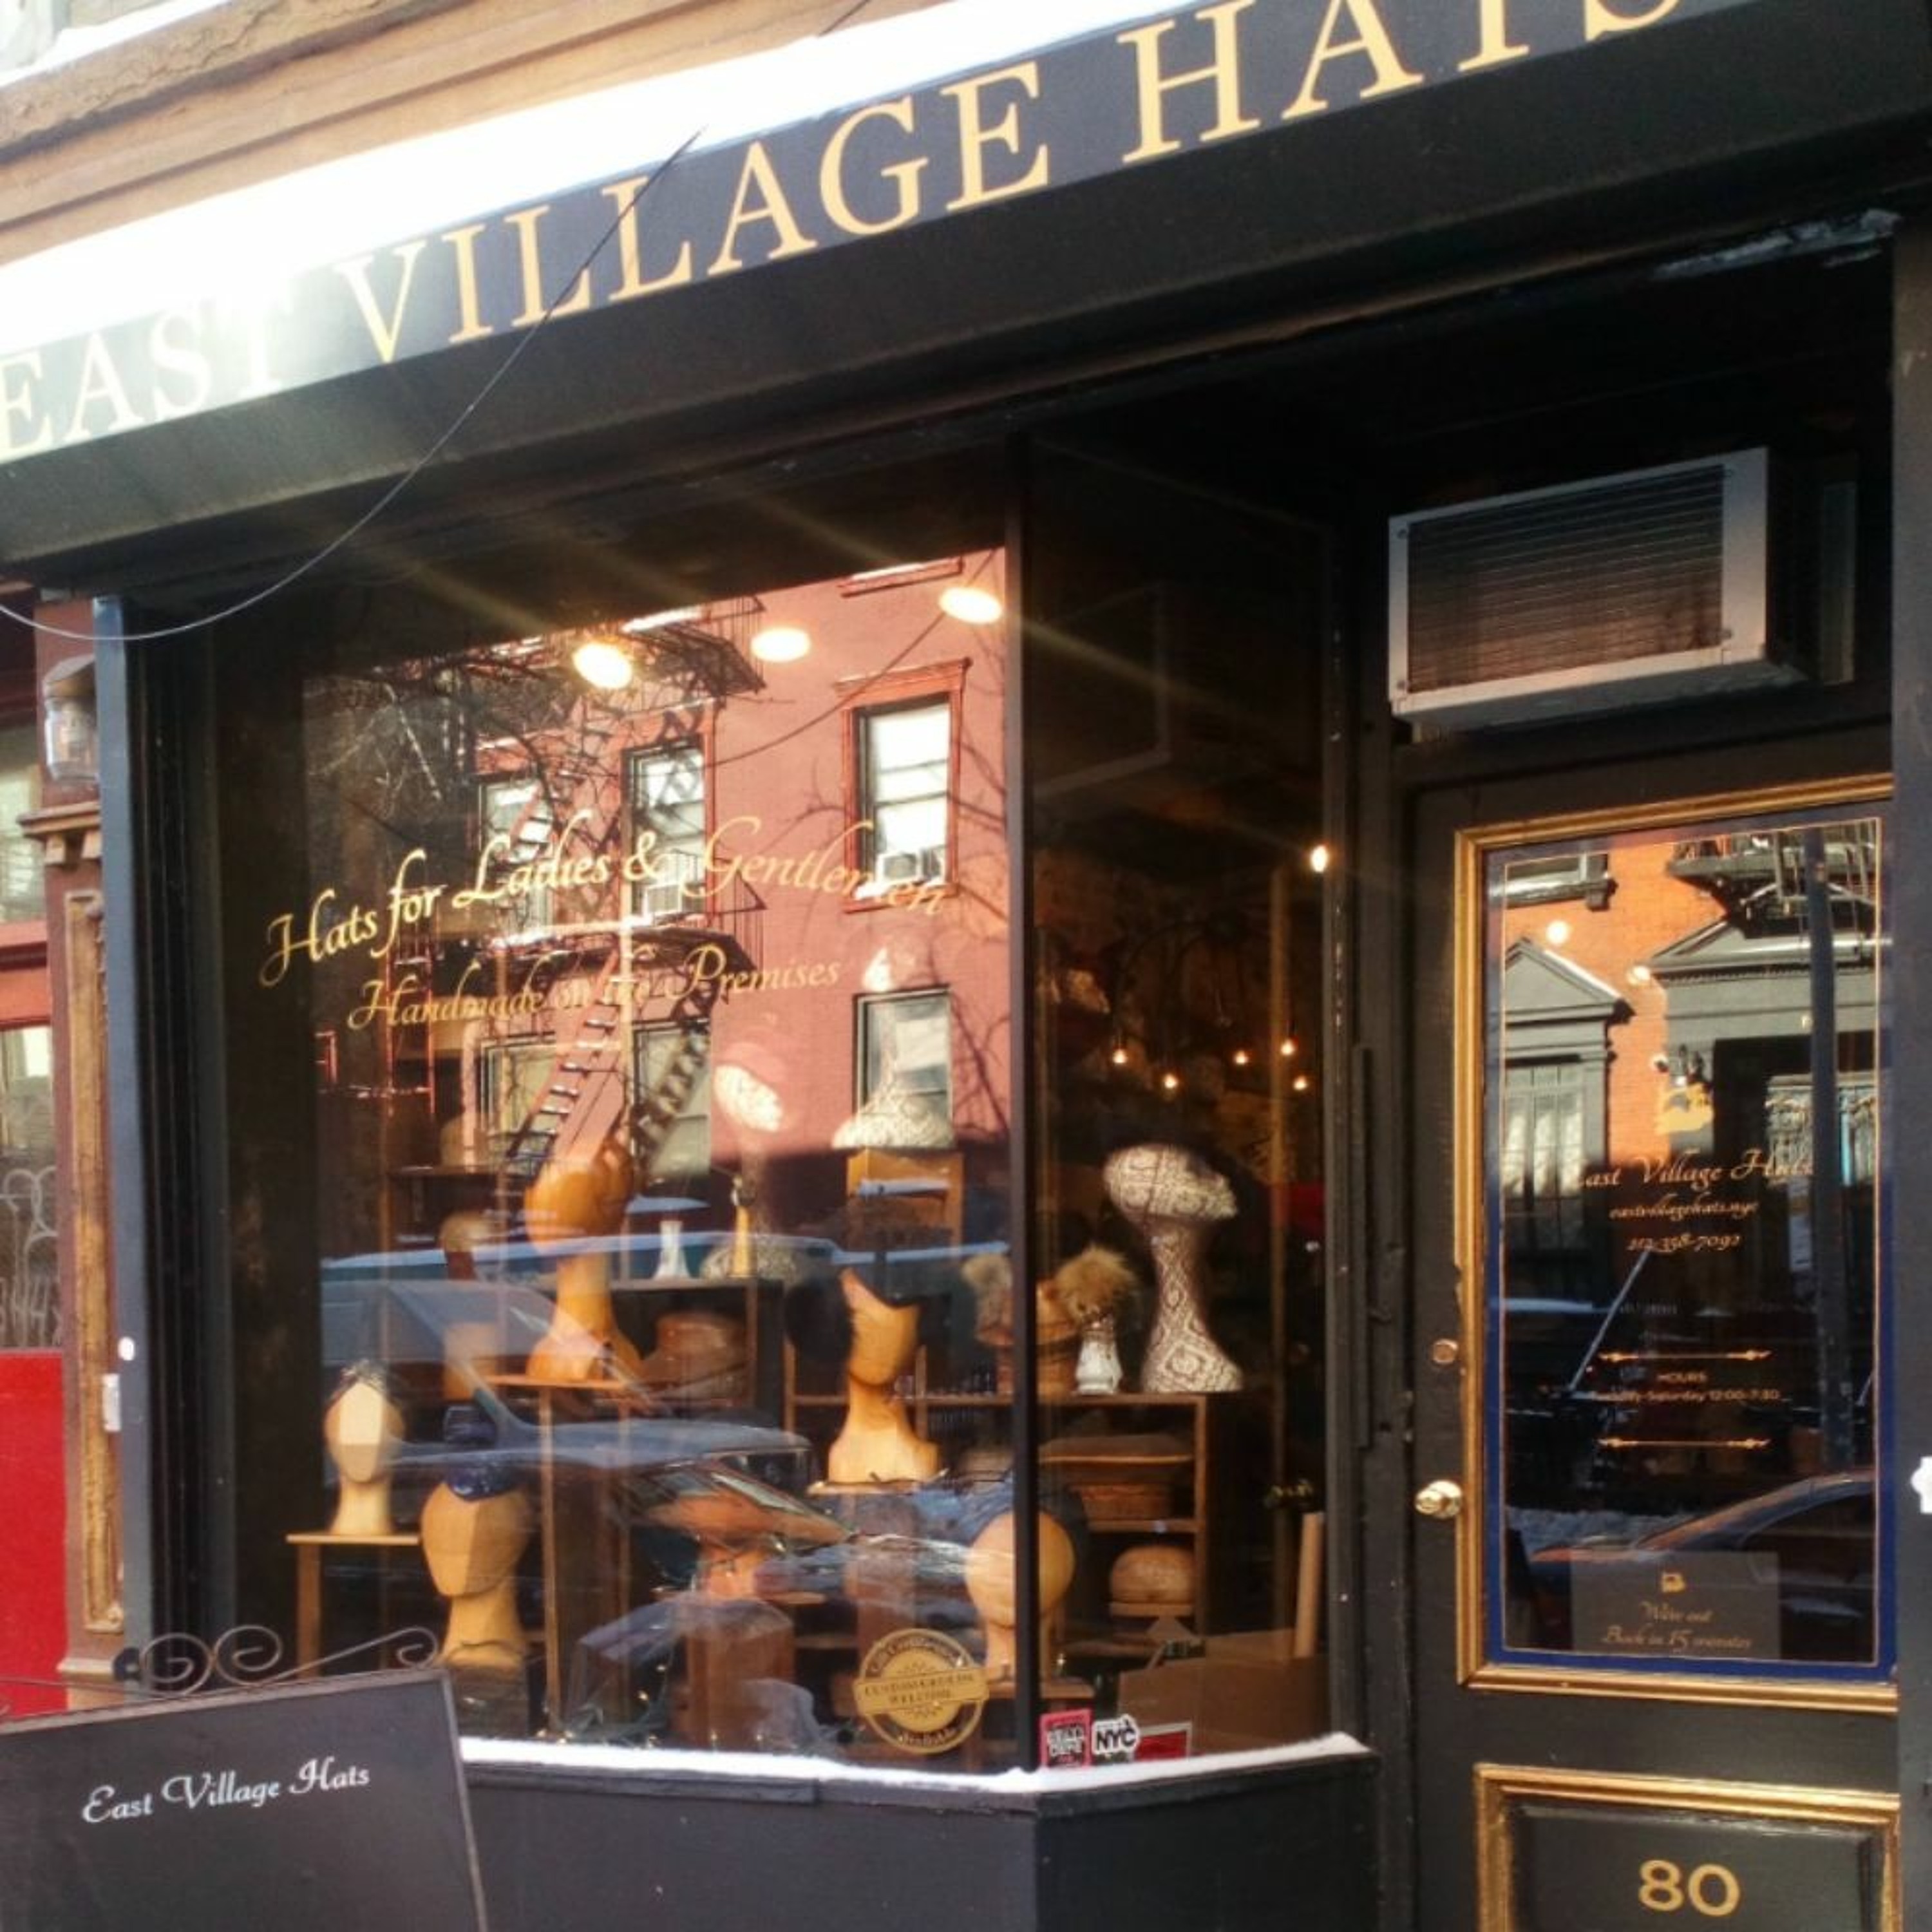 East Village Hats - Millinery.Info